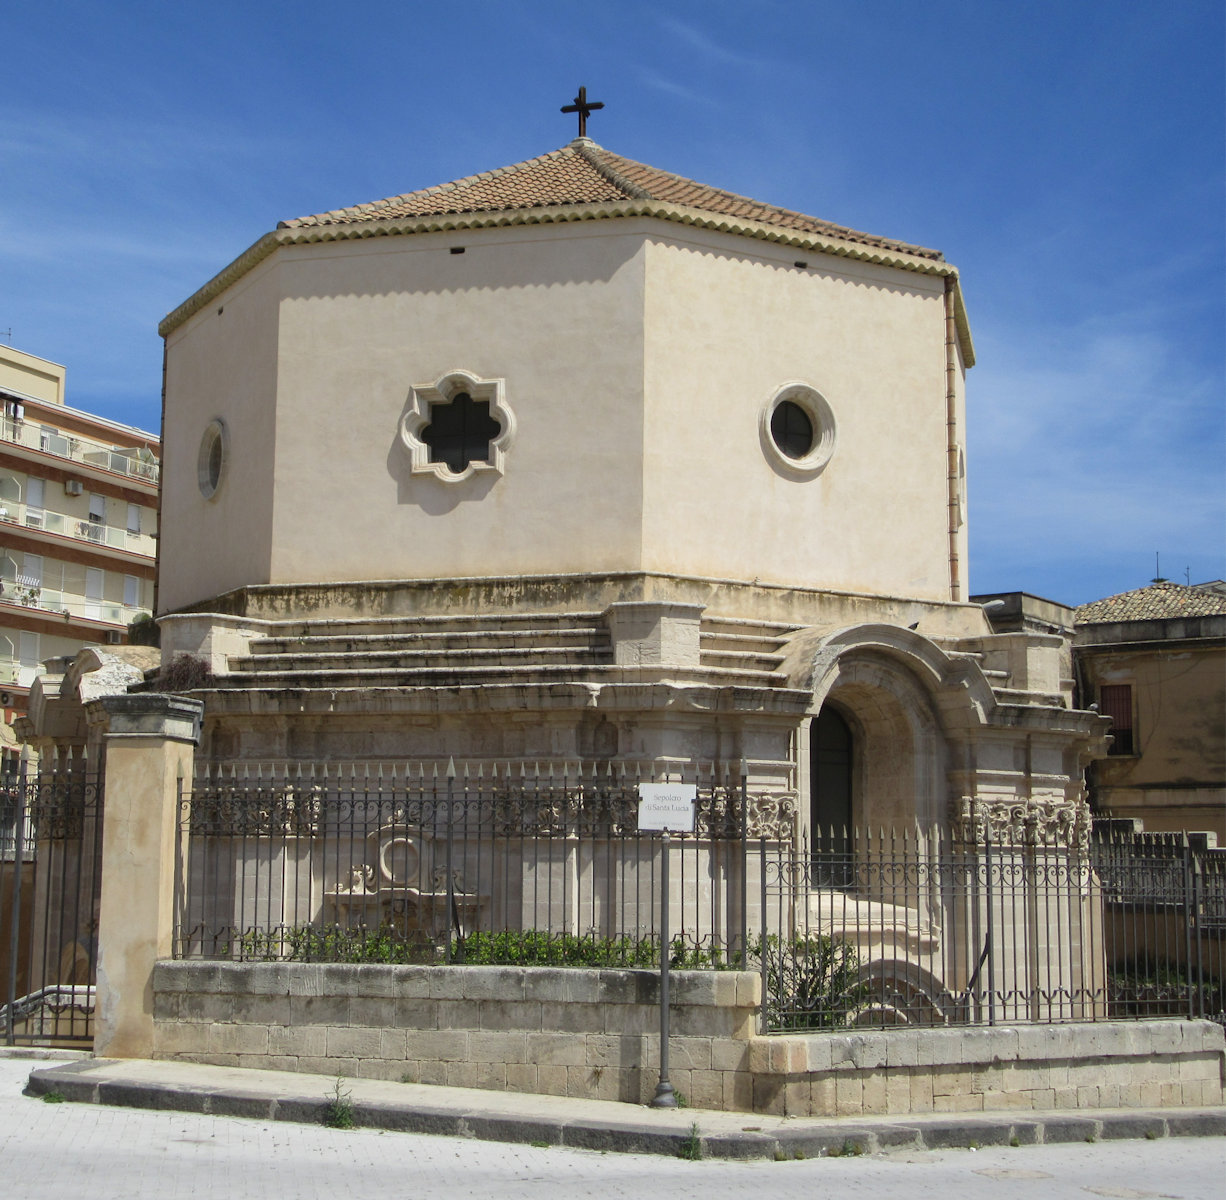 Kirche aus dem 18. Jahrhundert über dem Grab von Lucia von Syrakus in den Katakomben unter der Basilika Santa Lucia al Sepolcro in Siracusa